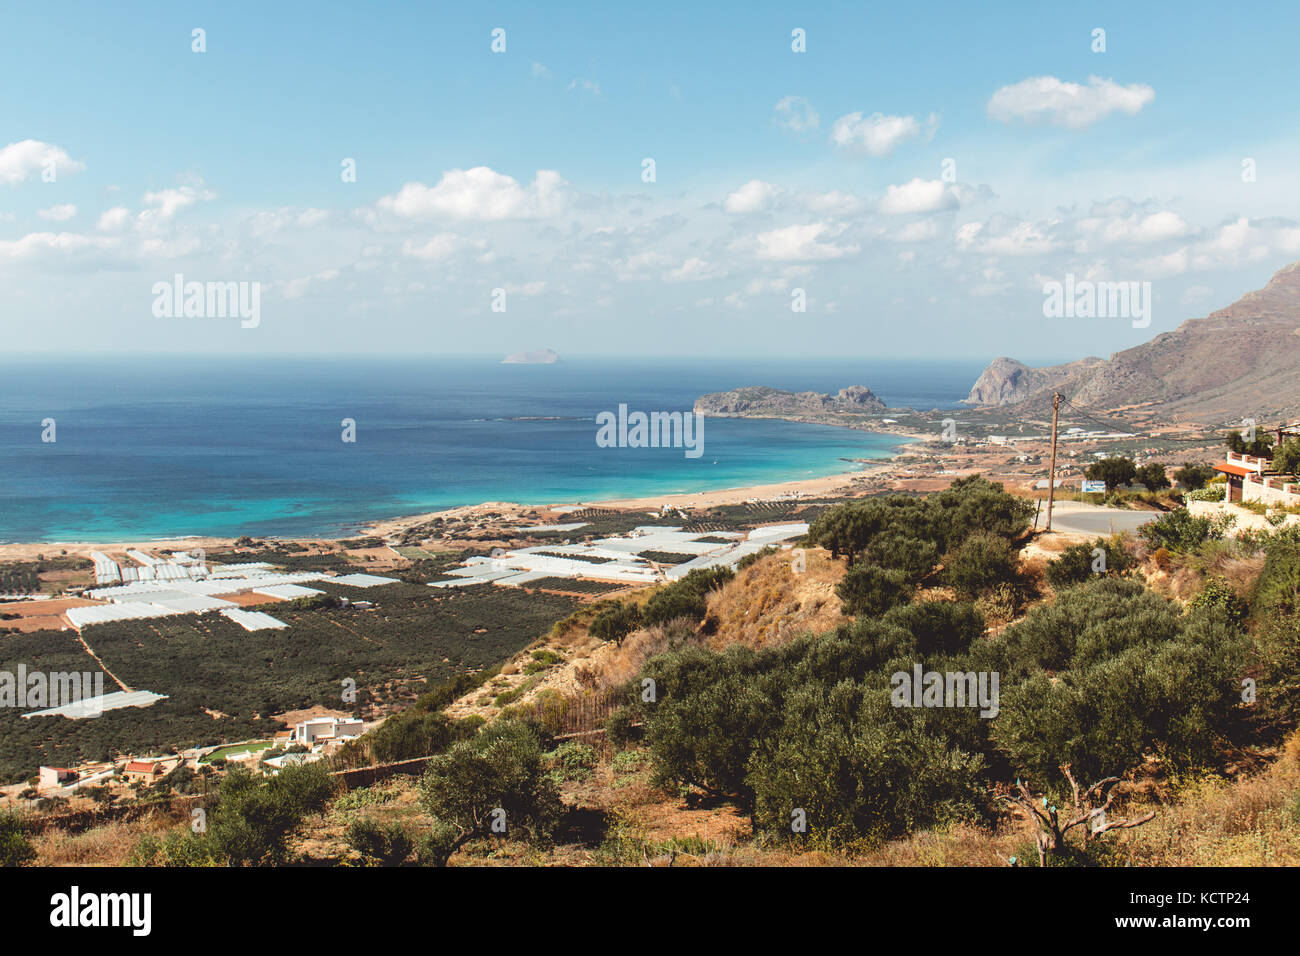 Ottobre 3rd, 2017, falasarna, Creta, Grecia - vista della spiaggia di falasarna, un antico porto greco città sulla costa nord occidentale di Creta. Foto Stock